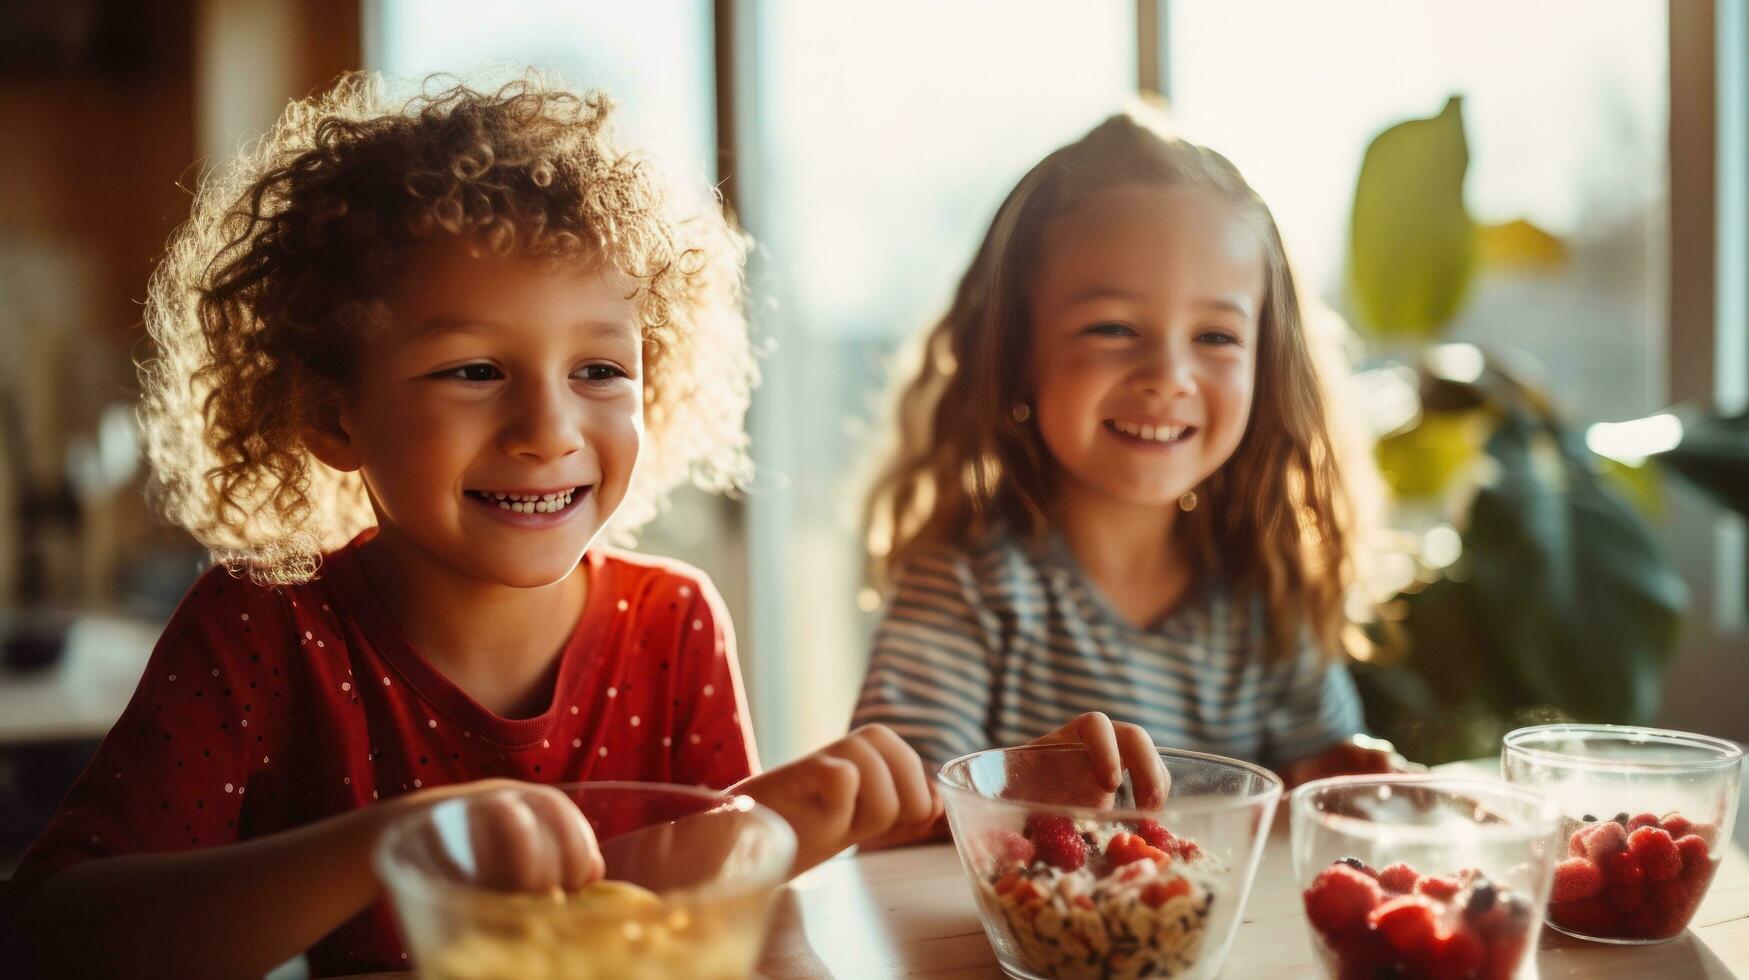 een kind lachend naast een kom van ontbijtgranen foto